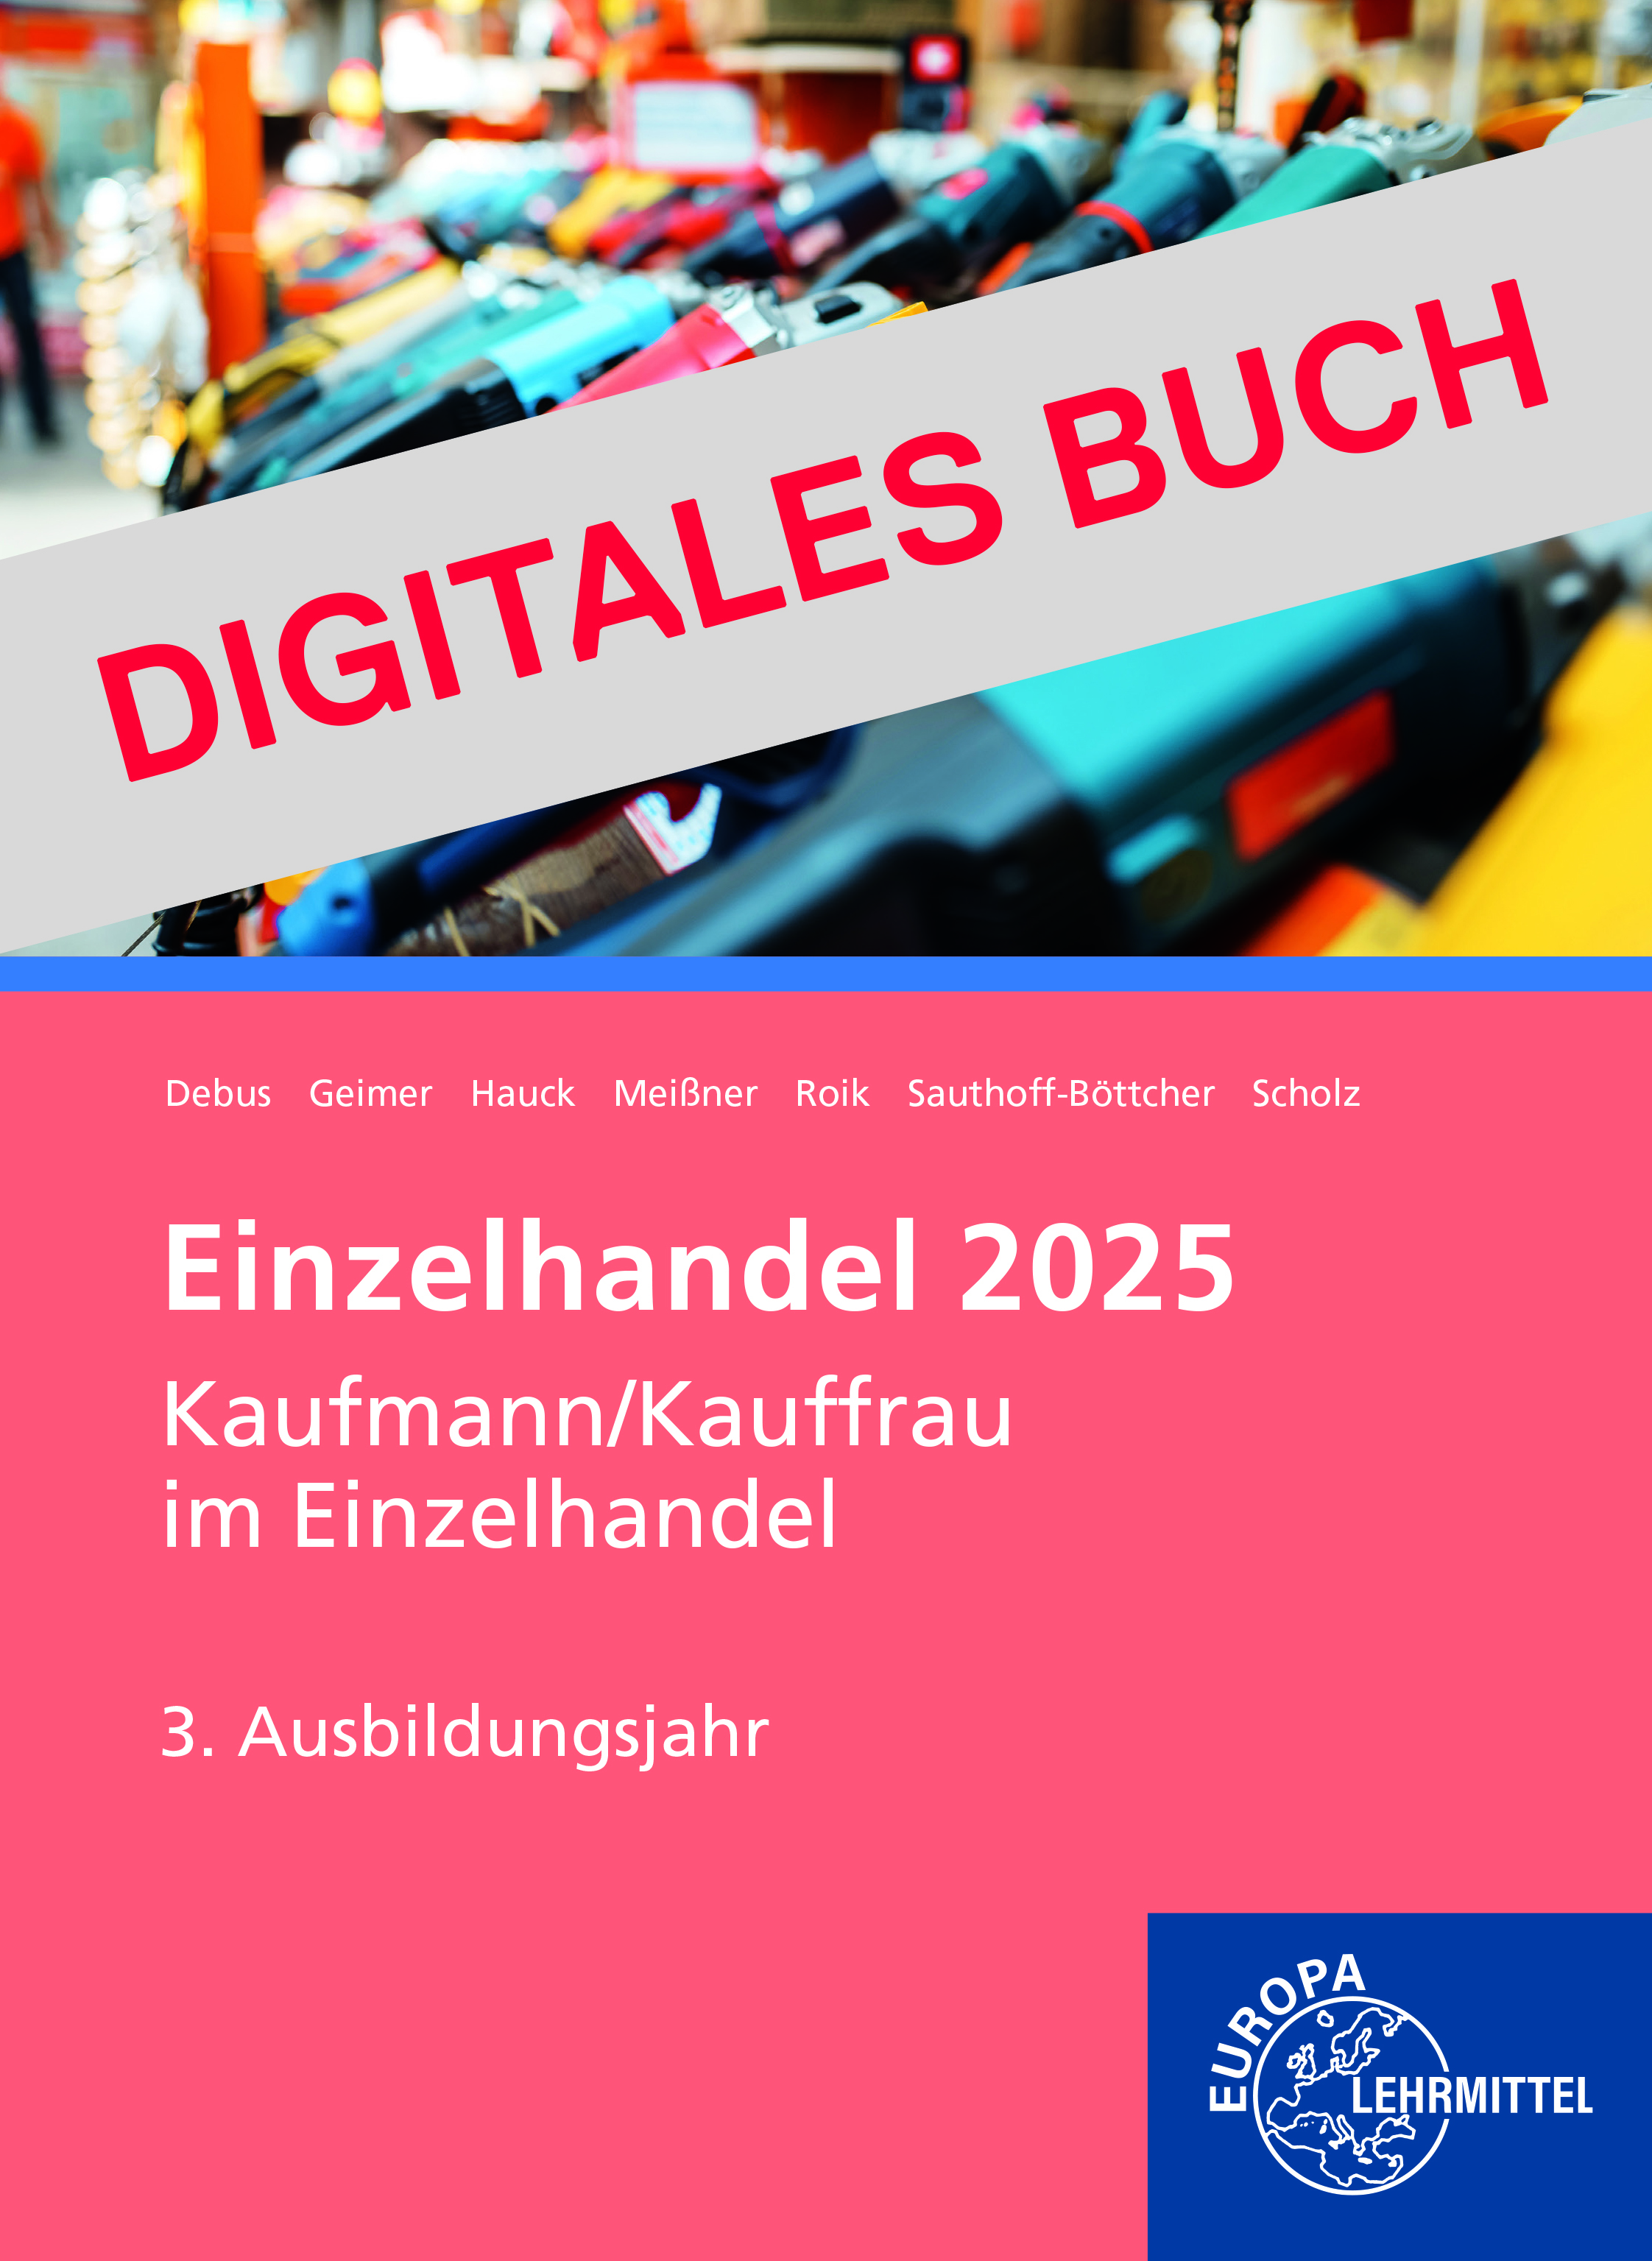 Einzelhandel 2025, 3. Ausbildungsjahr - Digitales Buch